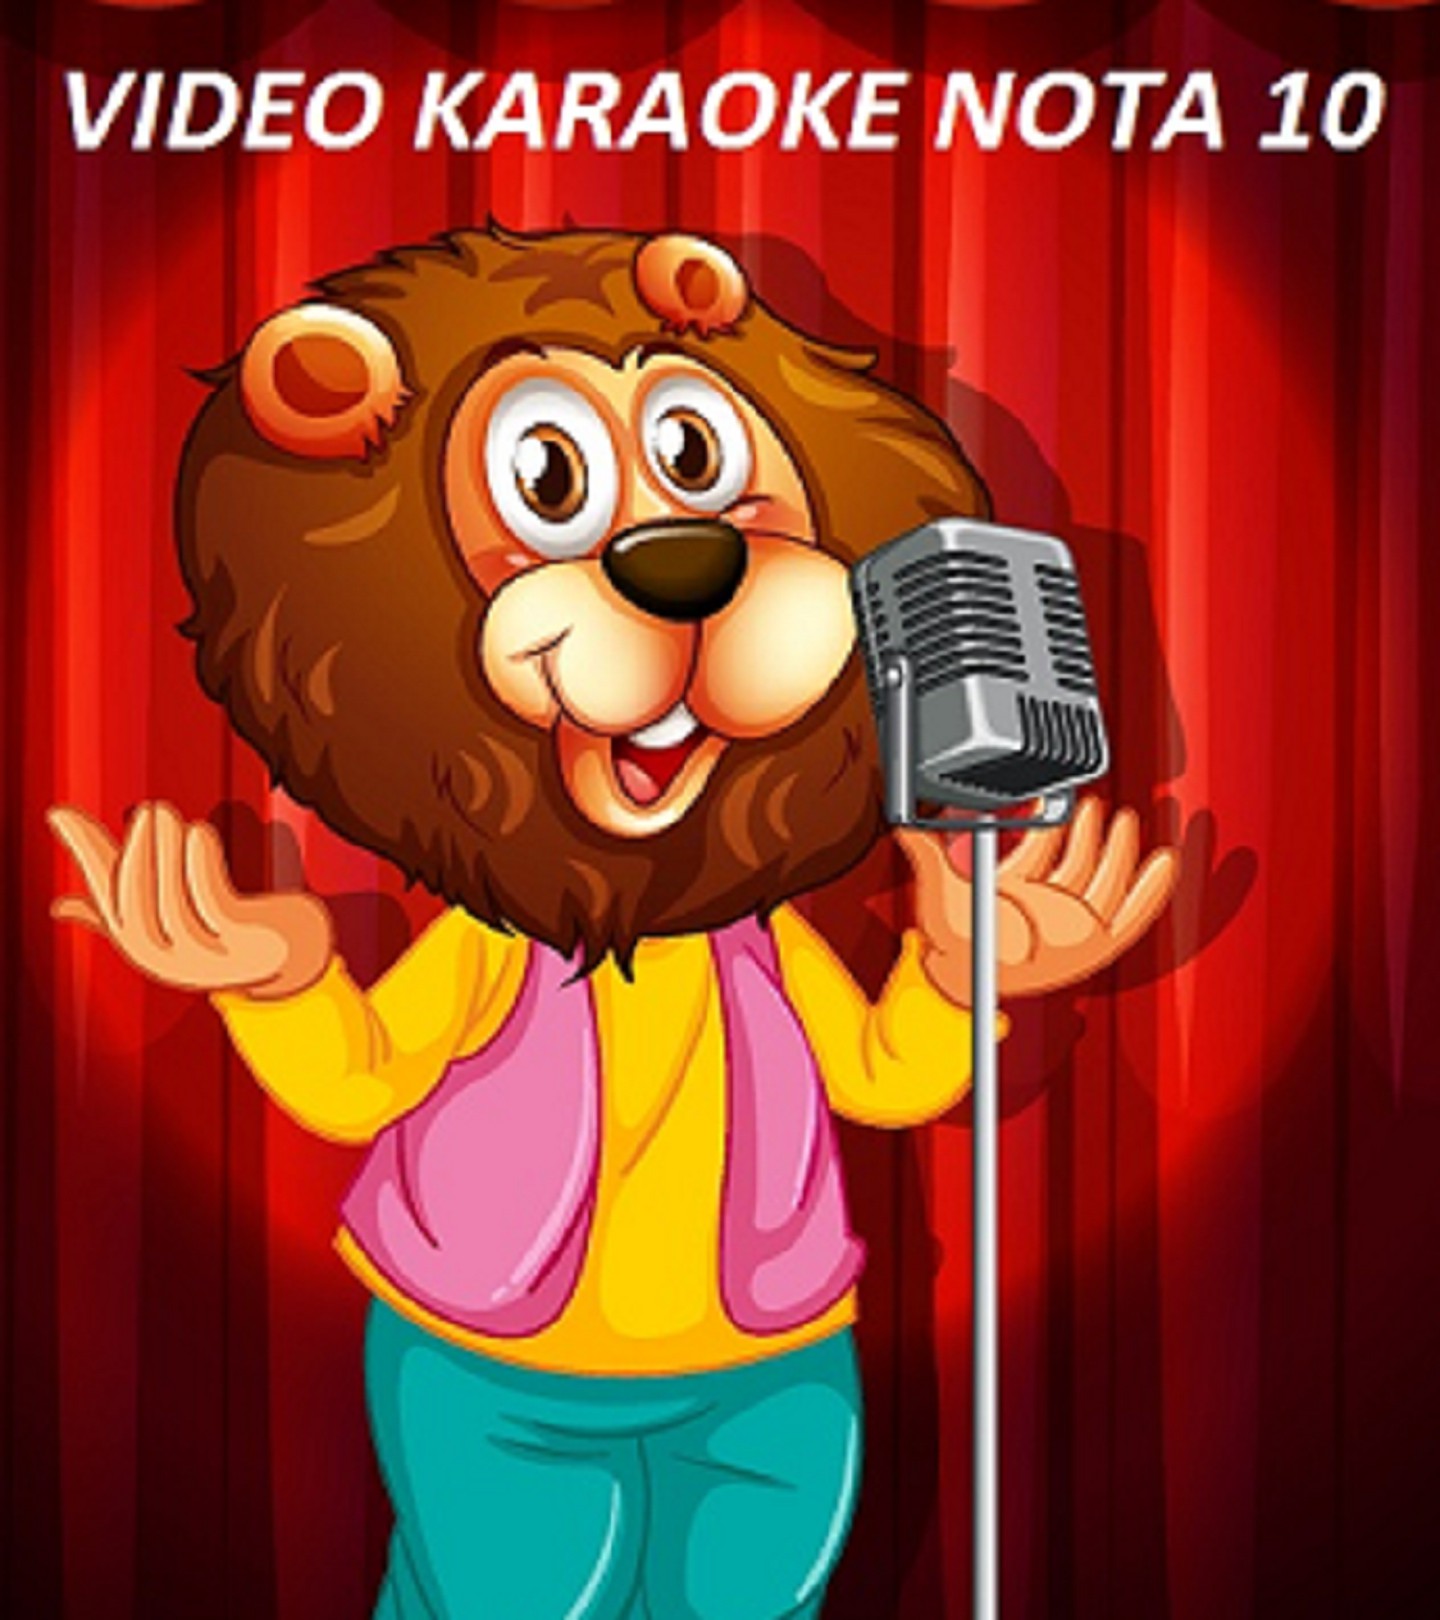 PCKaraokê 18.000 músicas karaoke com pontuação Grátis